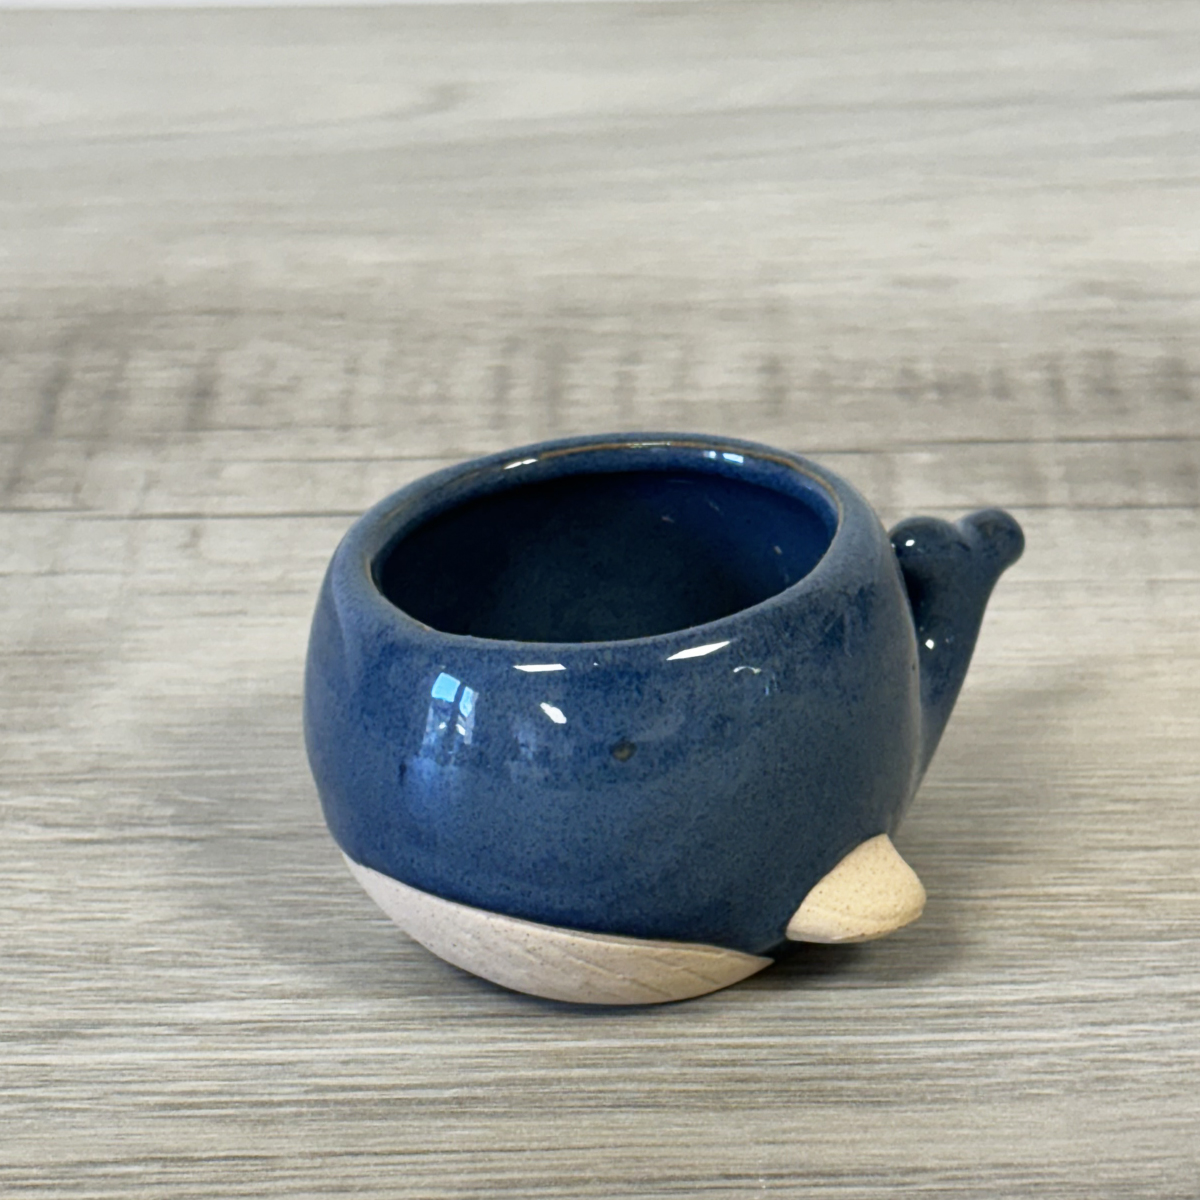 Mini cache-pot baleine bleue en cramique 5 cm